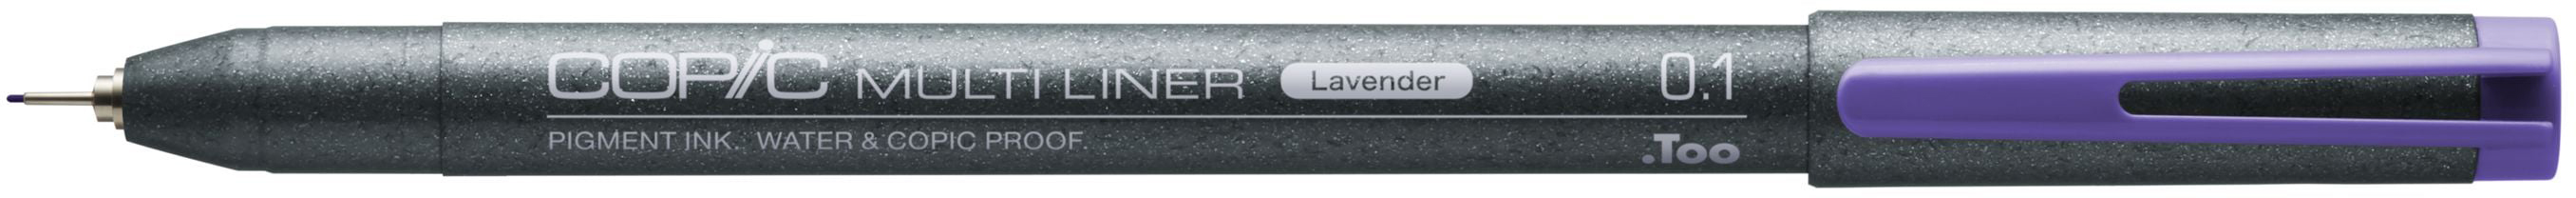 COPIC Multiliner 0.1mm 22075547 lavender lavender